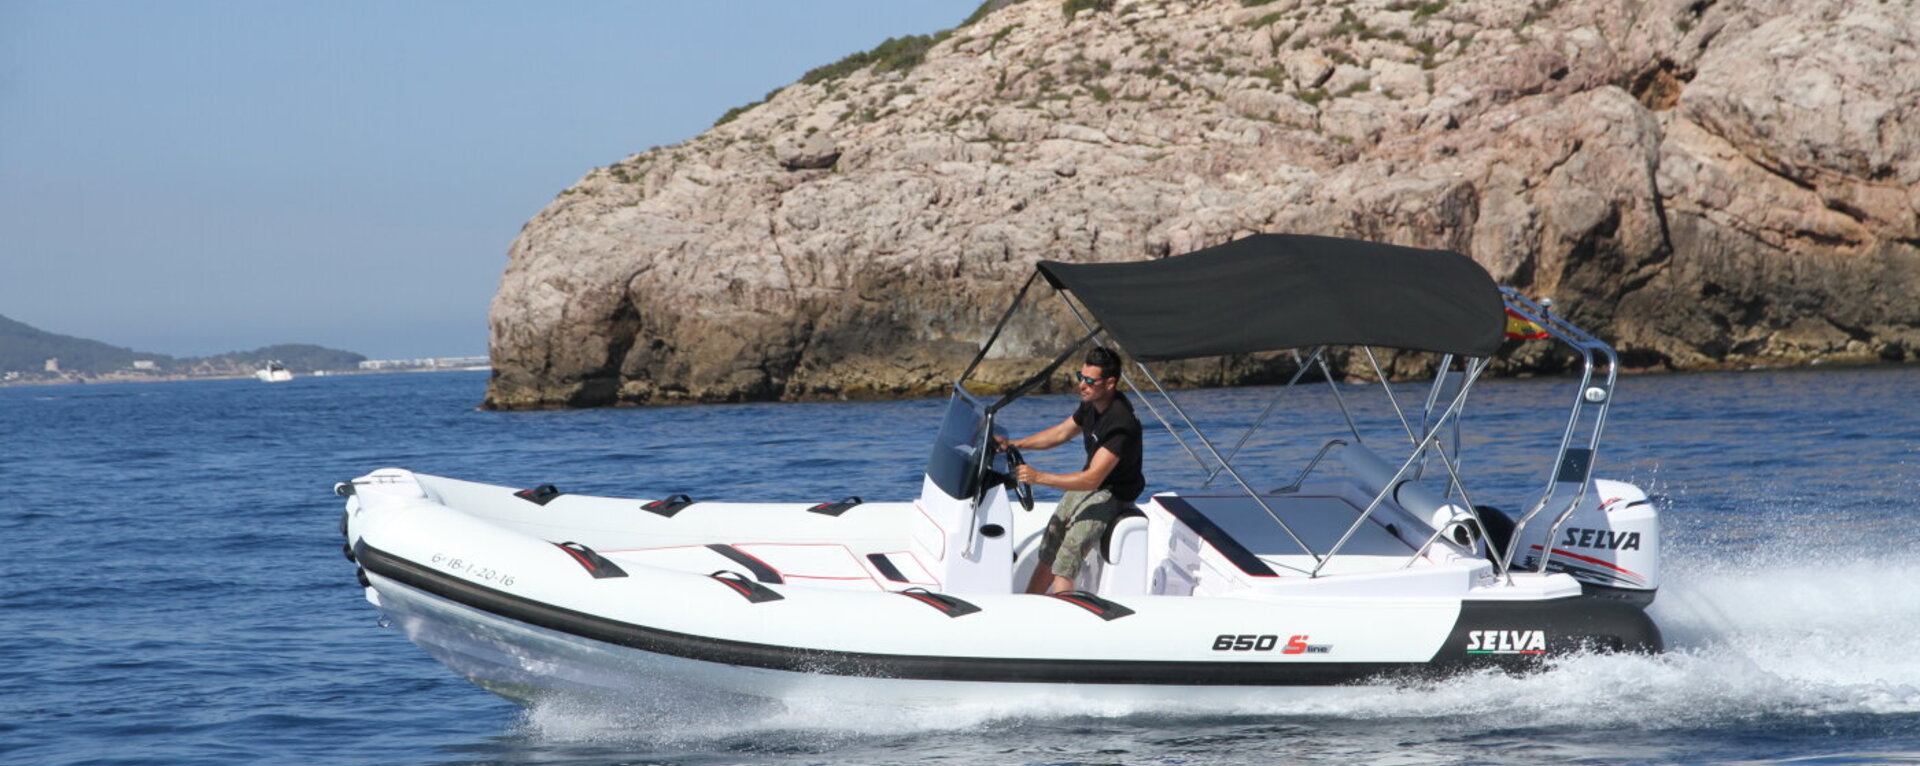 Selva 650 Sport  - La Brise Charter Ibiza